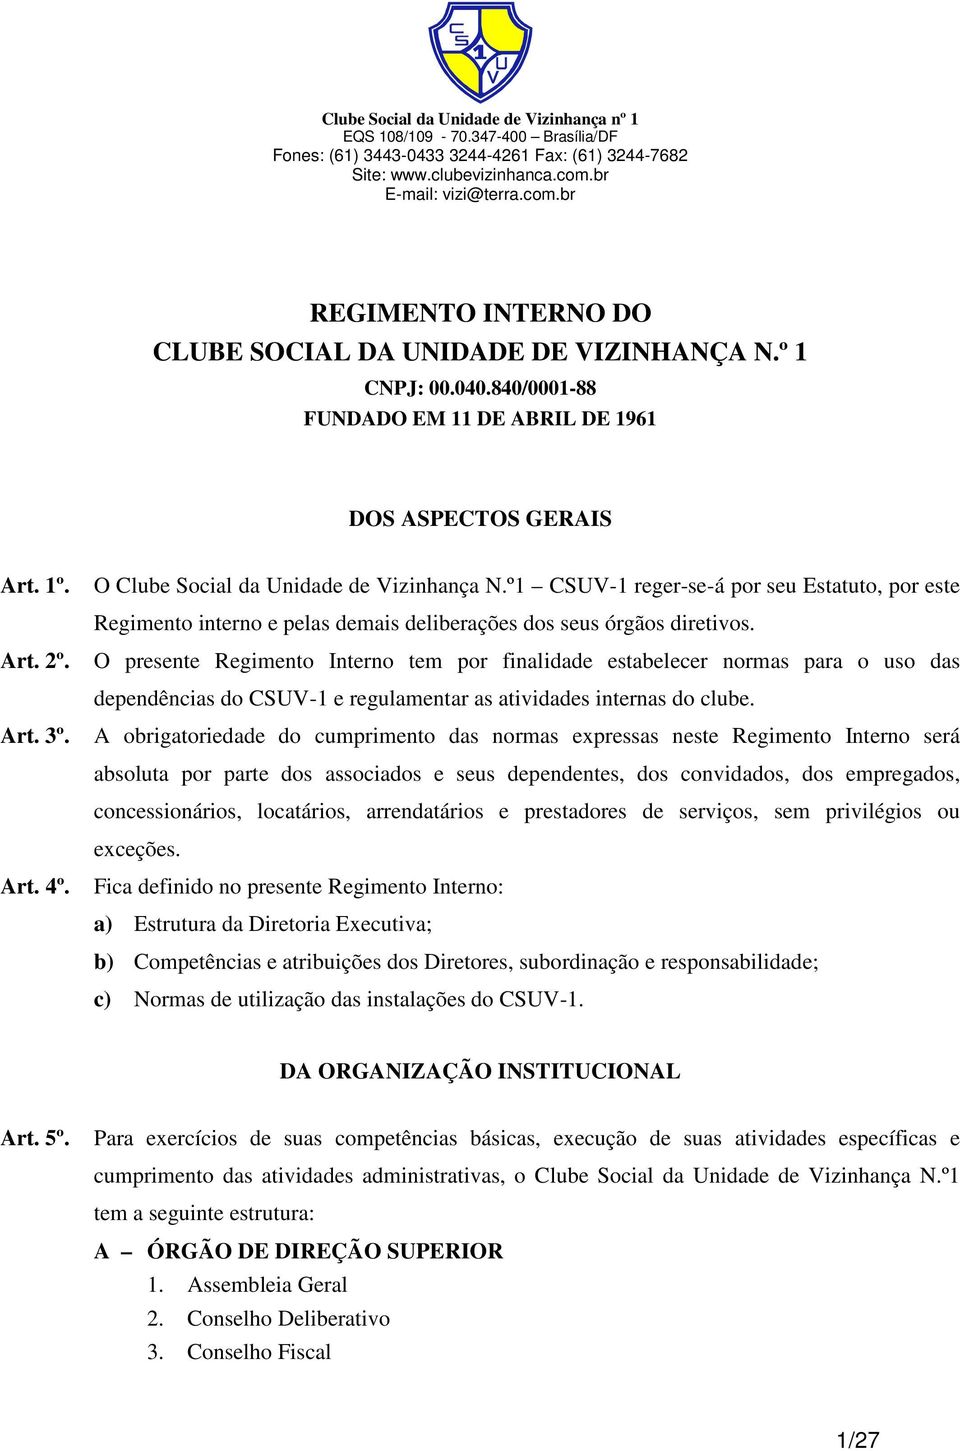 O presente Regimento Interno tem por finalidade estabelecer normas para o uso das dependências do CSUV-1 e regulamentar as atividades internas do clube.